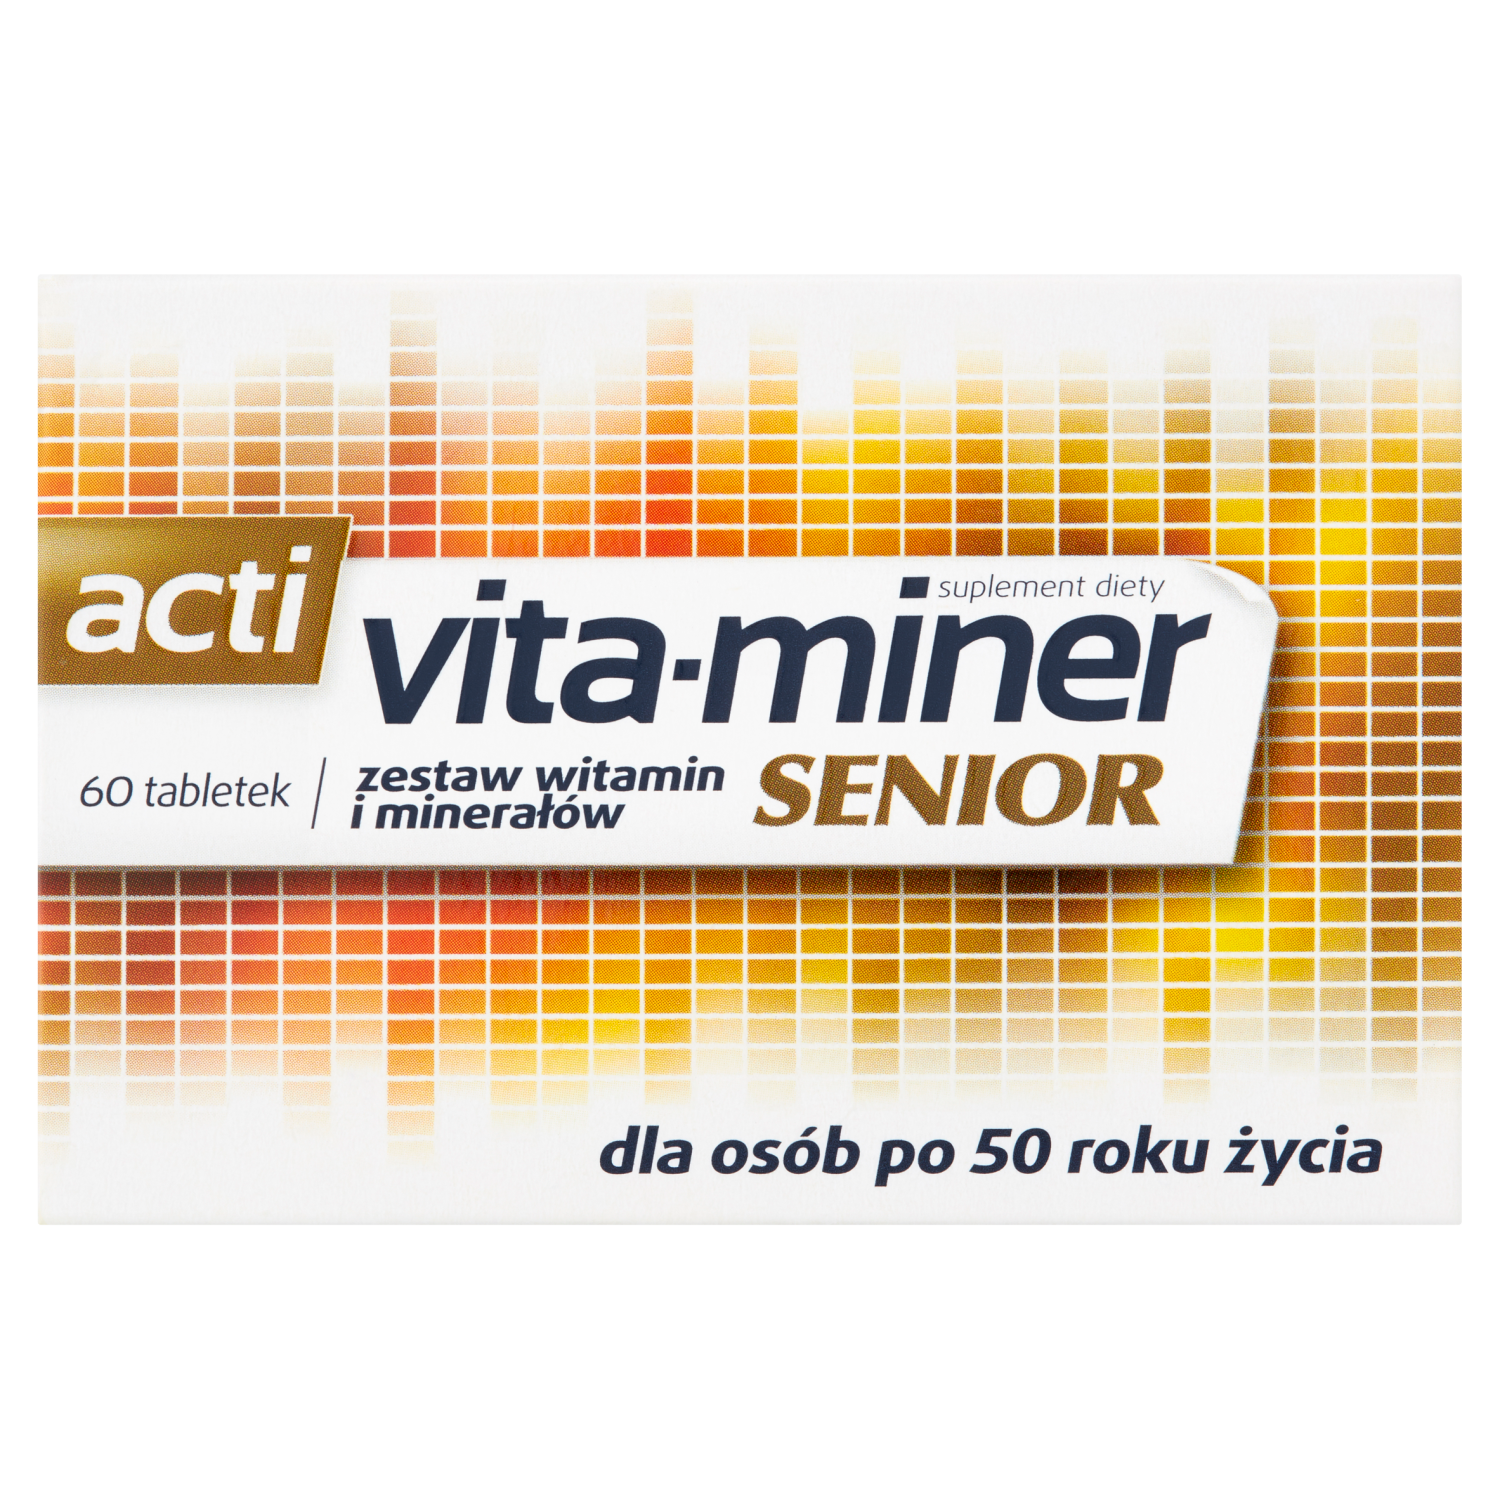 linea detox биологически активная добавка 60 таблеток 1 упаковка Vita-Miner Senior биологически активная добавка, 60 таблеток/1 упаковка